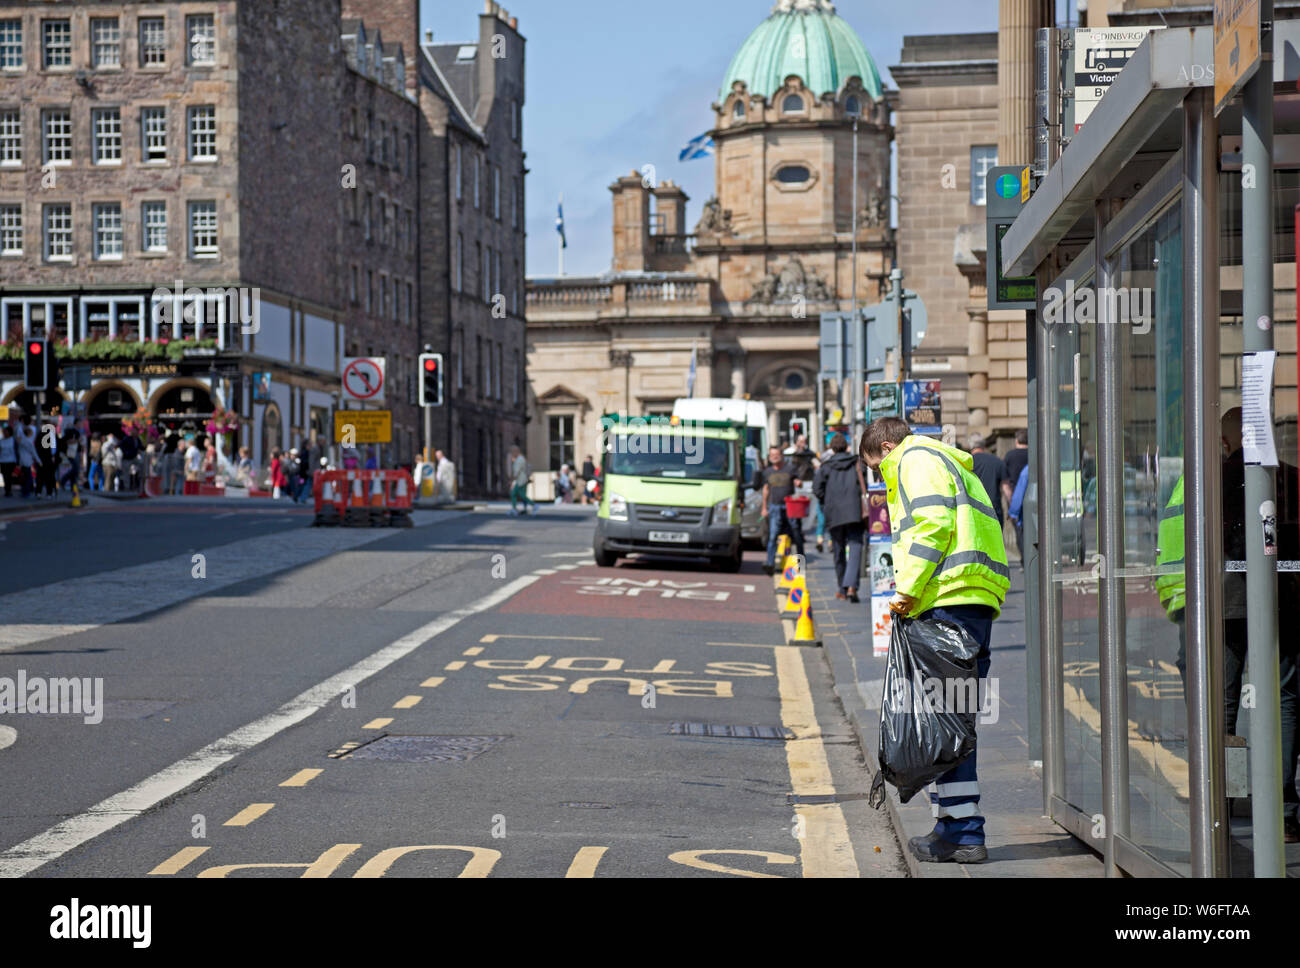 Edinburgh, Schottland, Großbritannien. August 2019. 40 zusätzliche Straßenreinigungskräfte werden sich den derzeitigen 37 Mitarbeitern anschließen, um die Straßen und Bürgersteige der Hauptstadt während der außergewöhnlich geschäftigen Festivalperiode zu säuberen. Bereitstellung eines 24/7-Service. Stockfoto